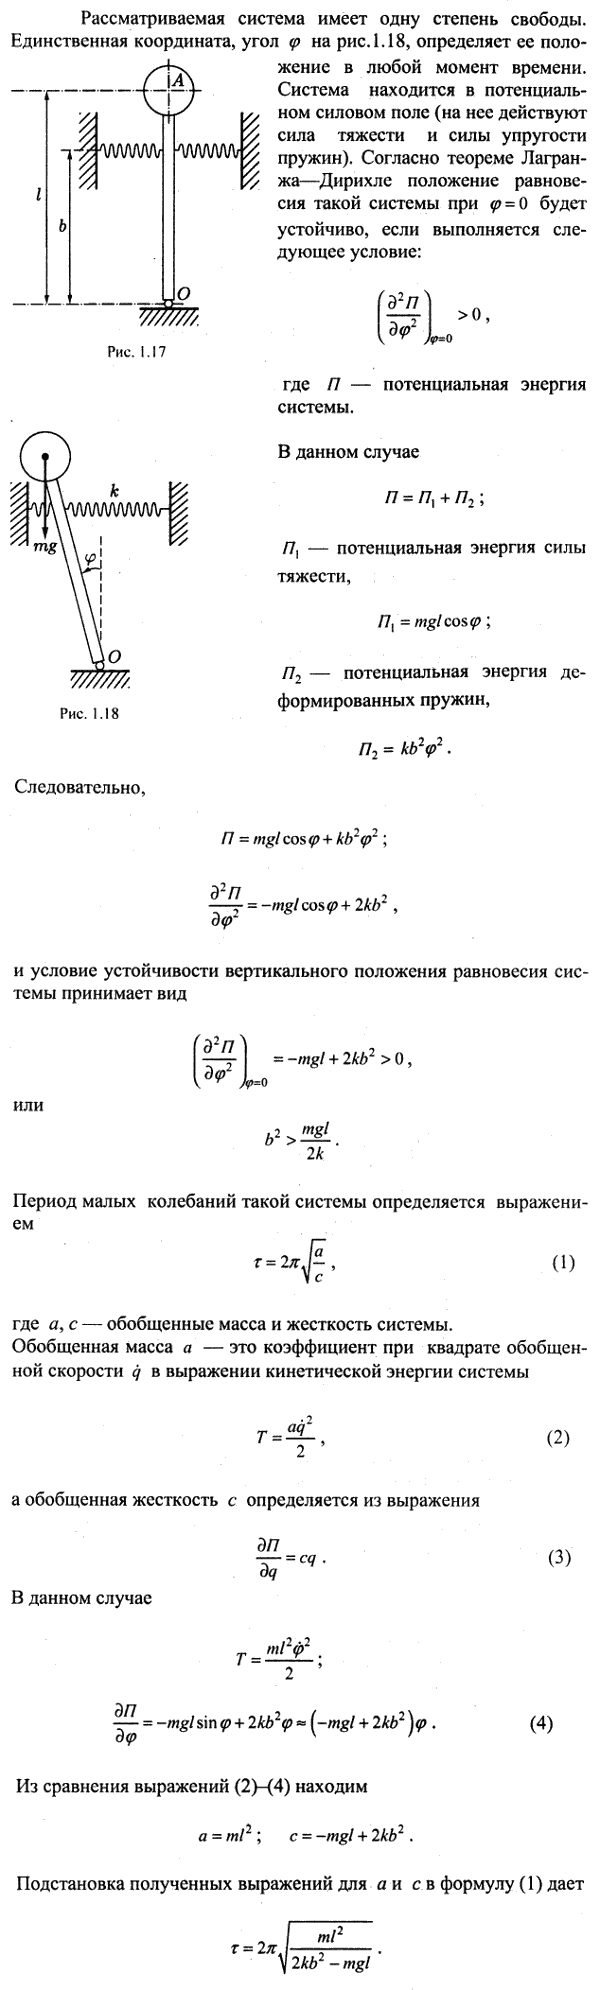 Предполагая, что маятник, описанный в предыдущей задаче, установлен так, что масса m расположена выше точки подвеса, определить условие, при